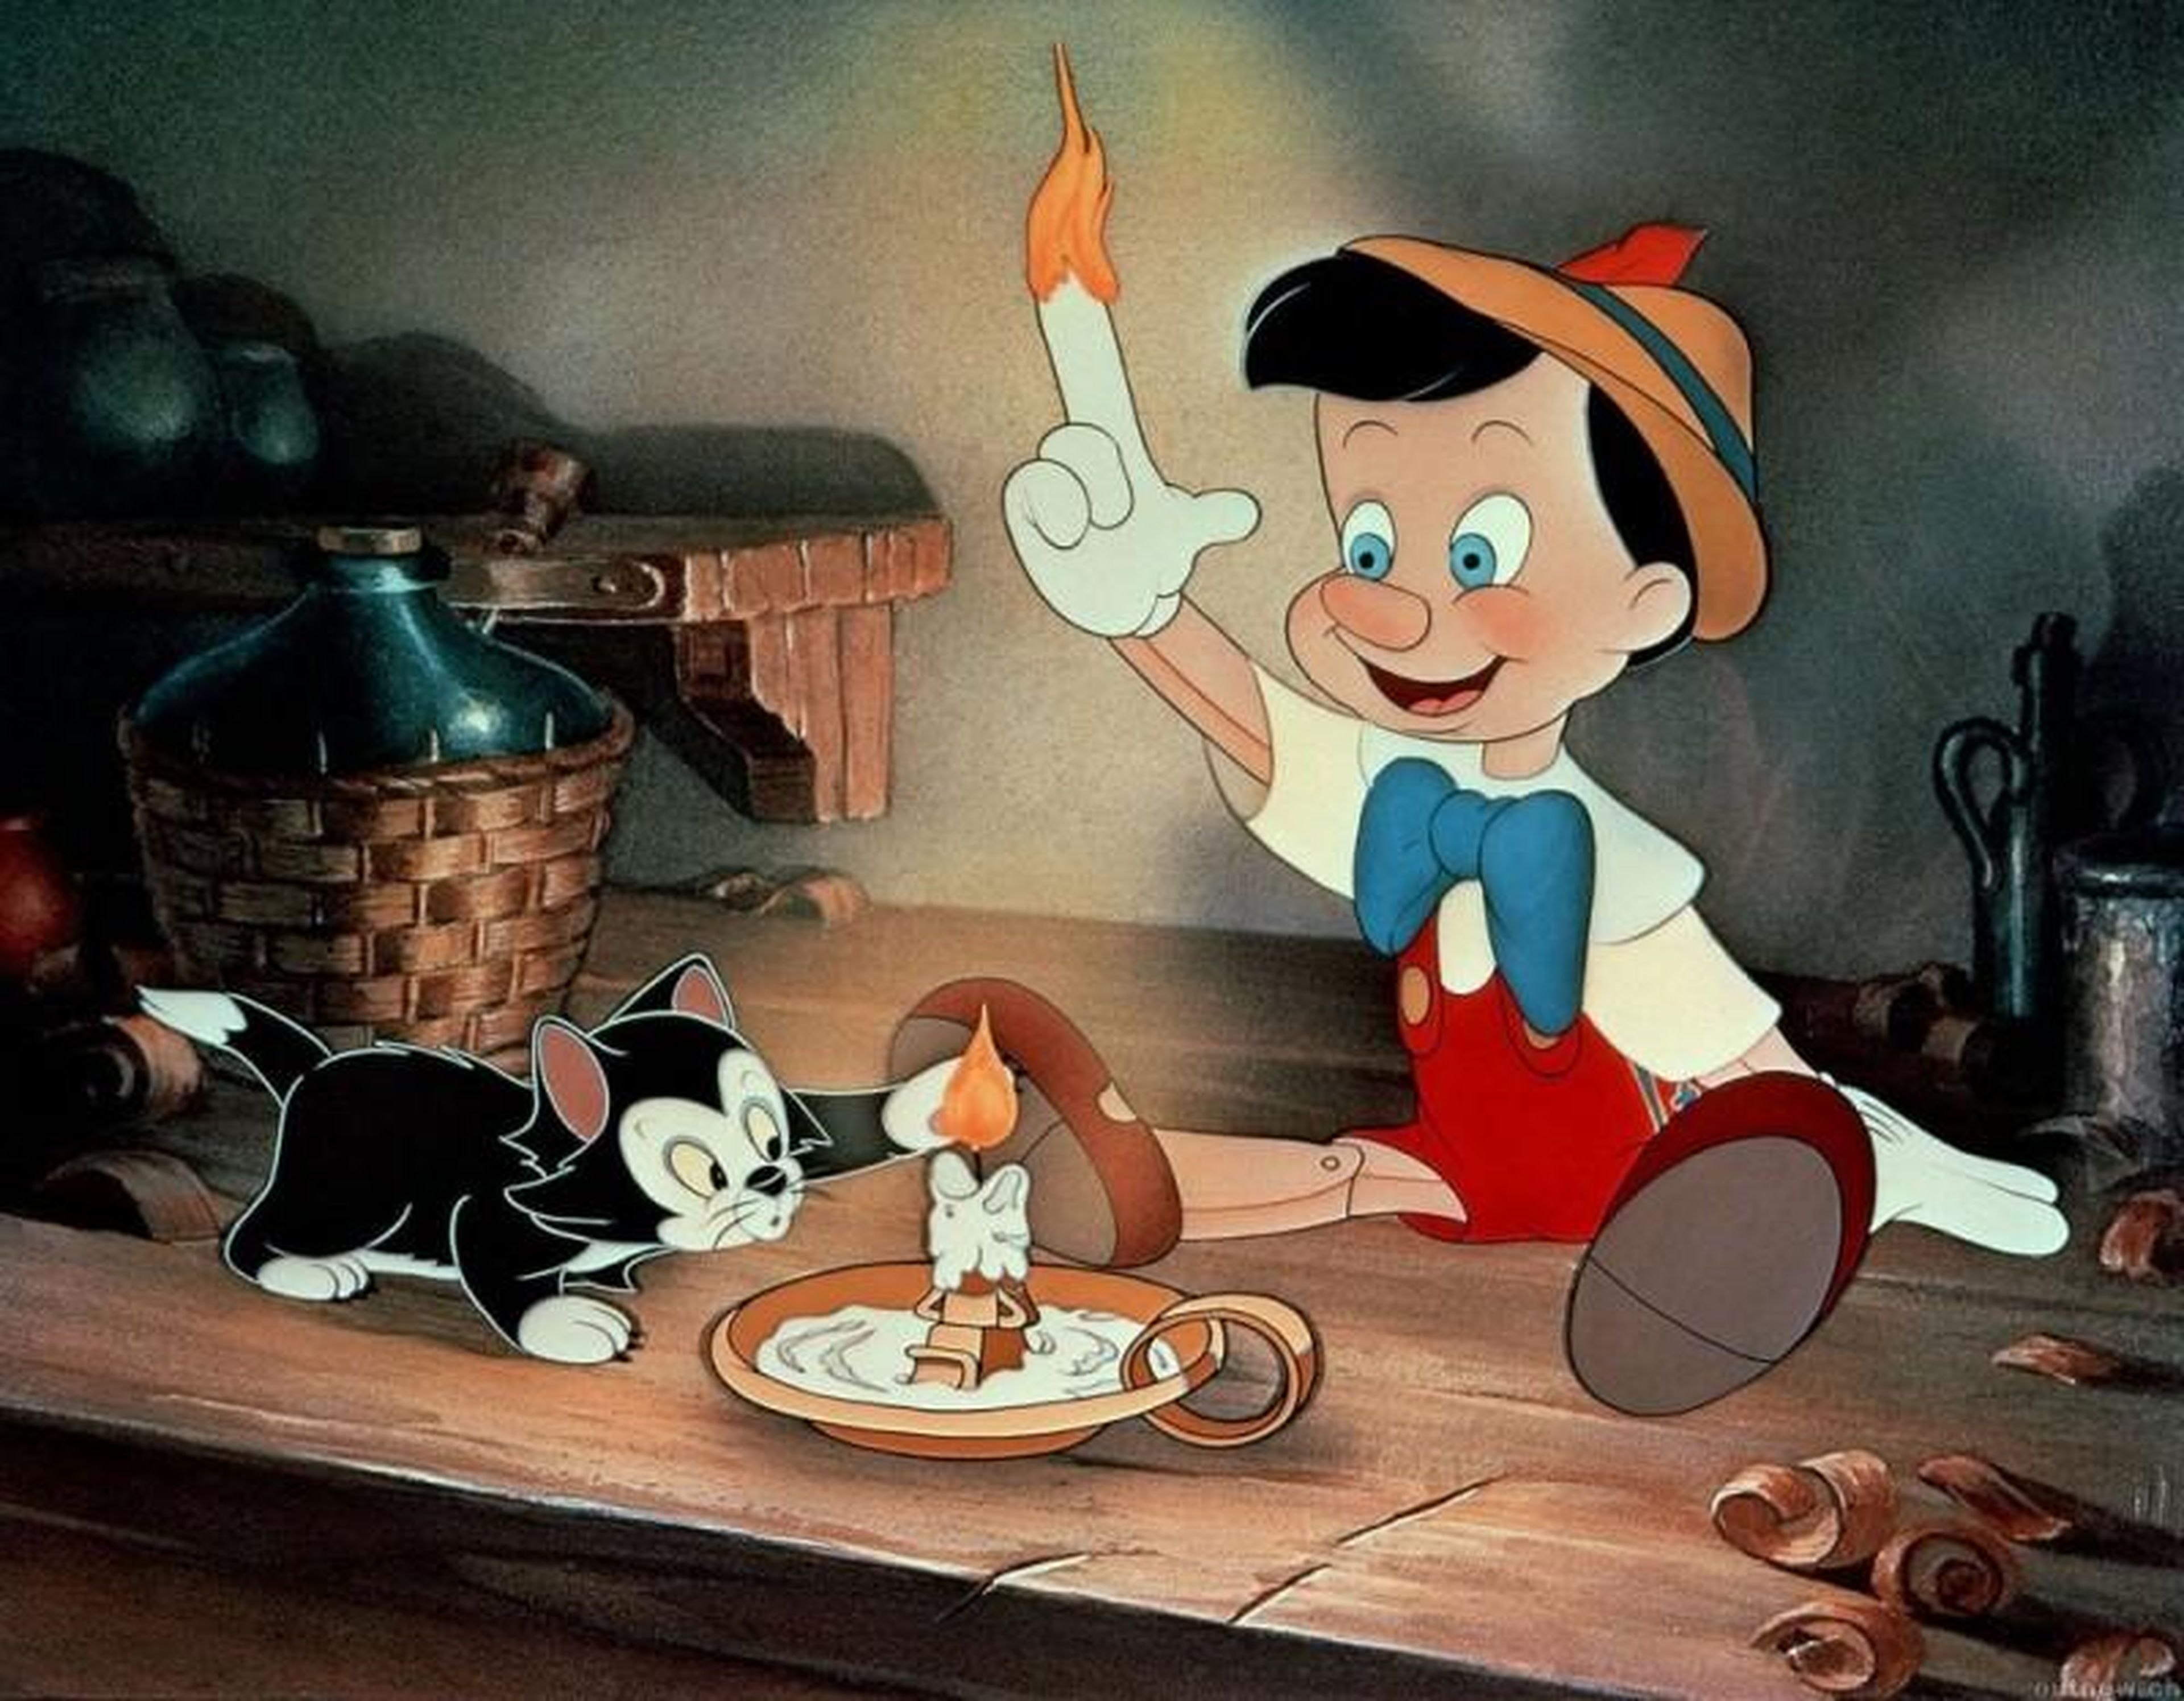 7. "Pinocchio" (1940)